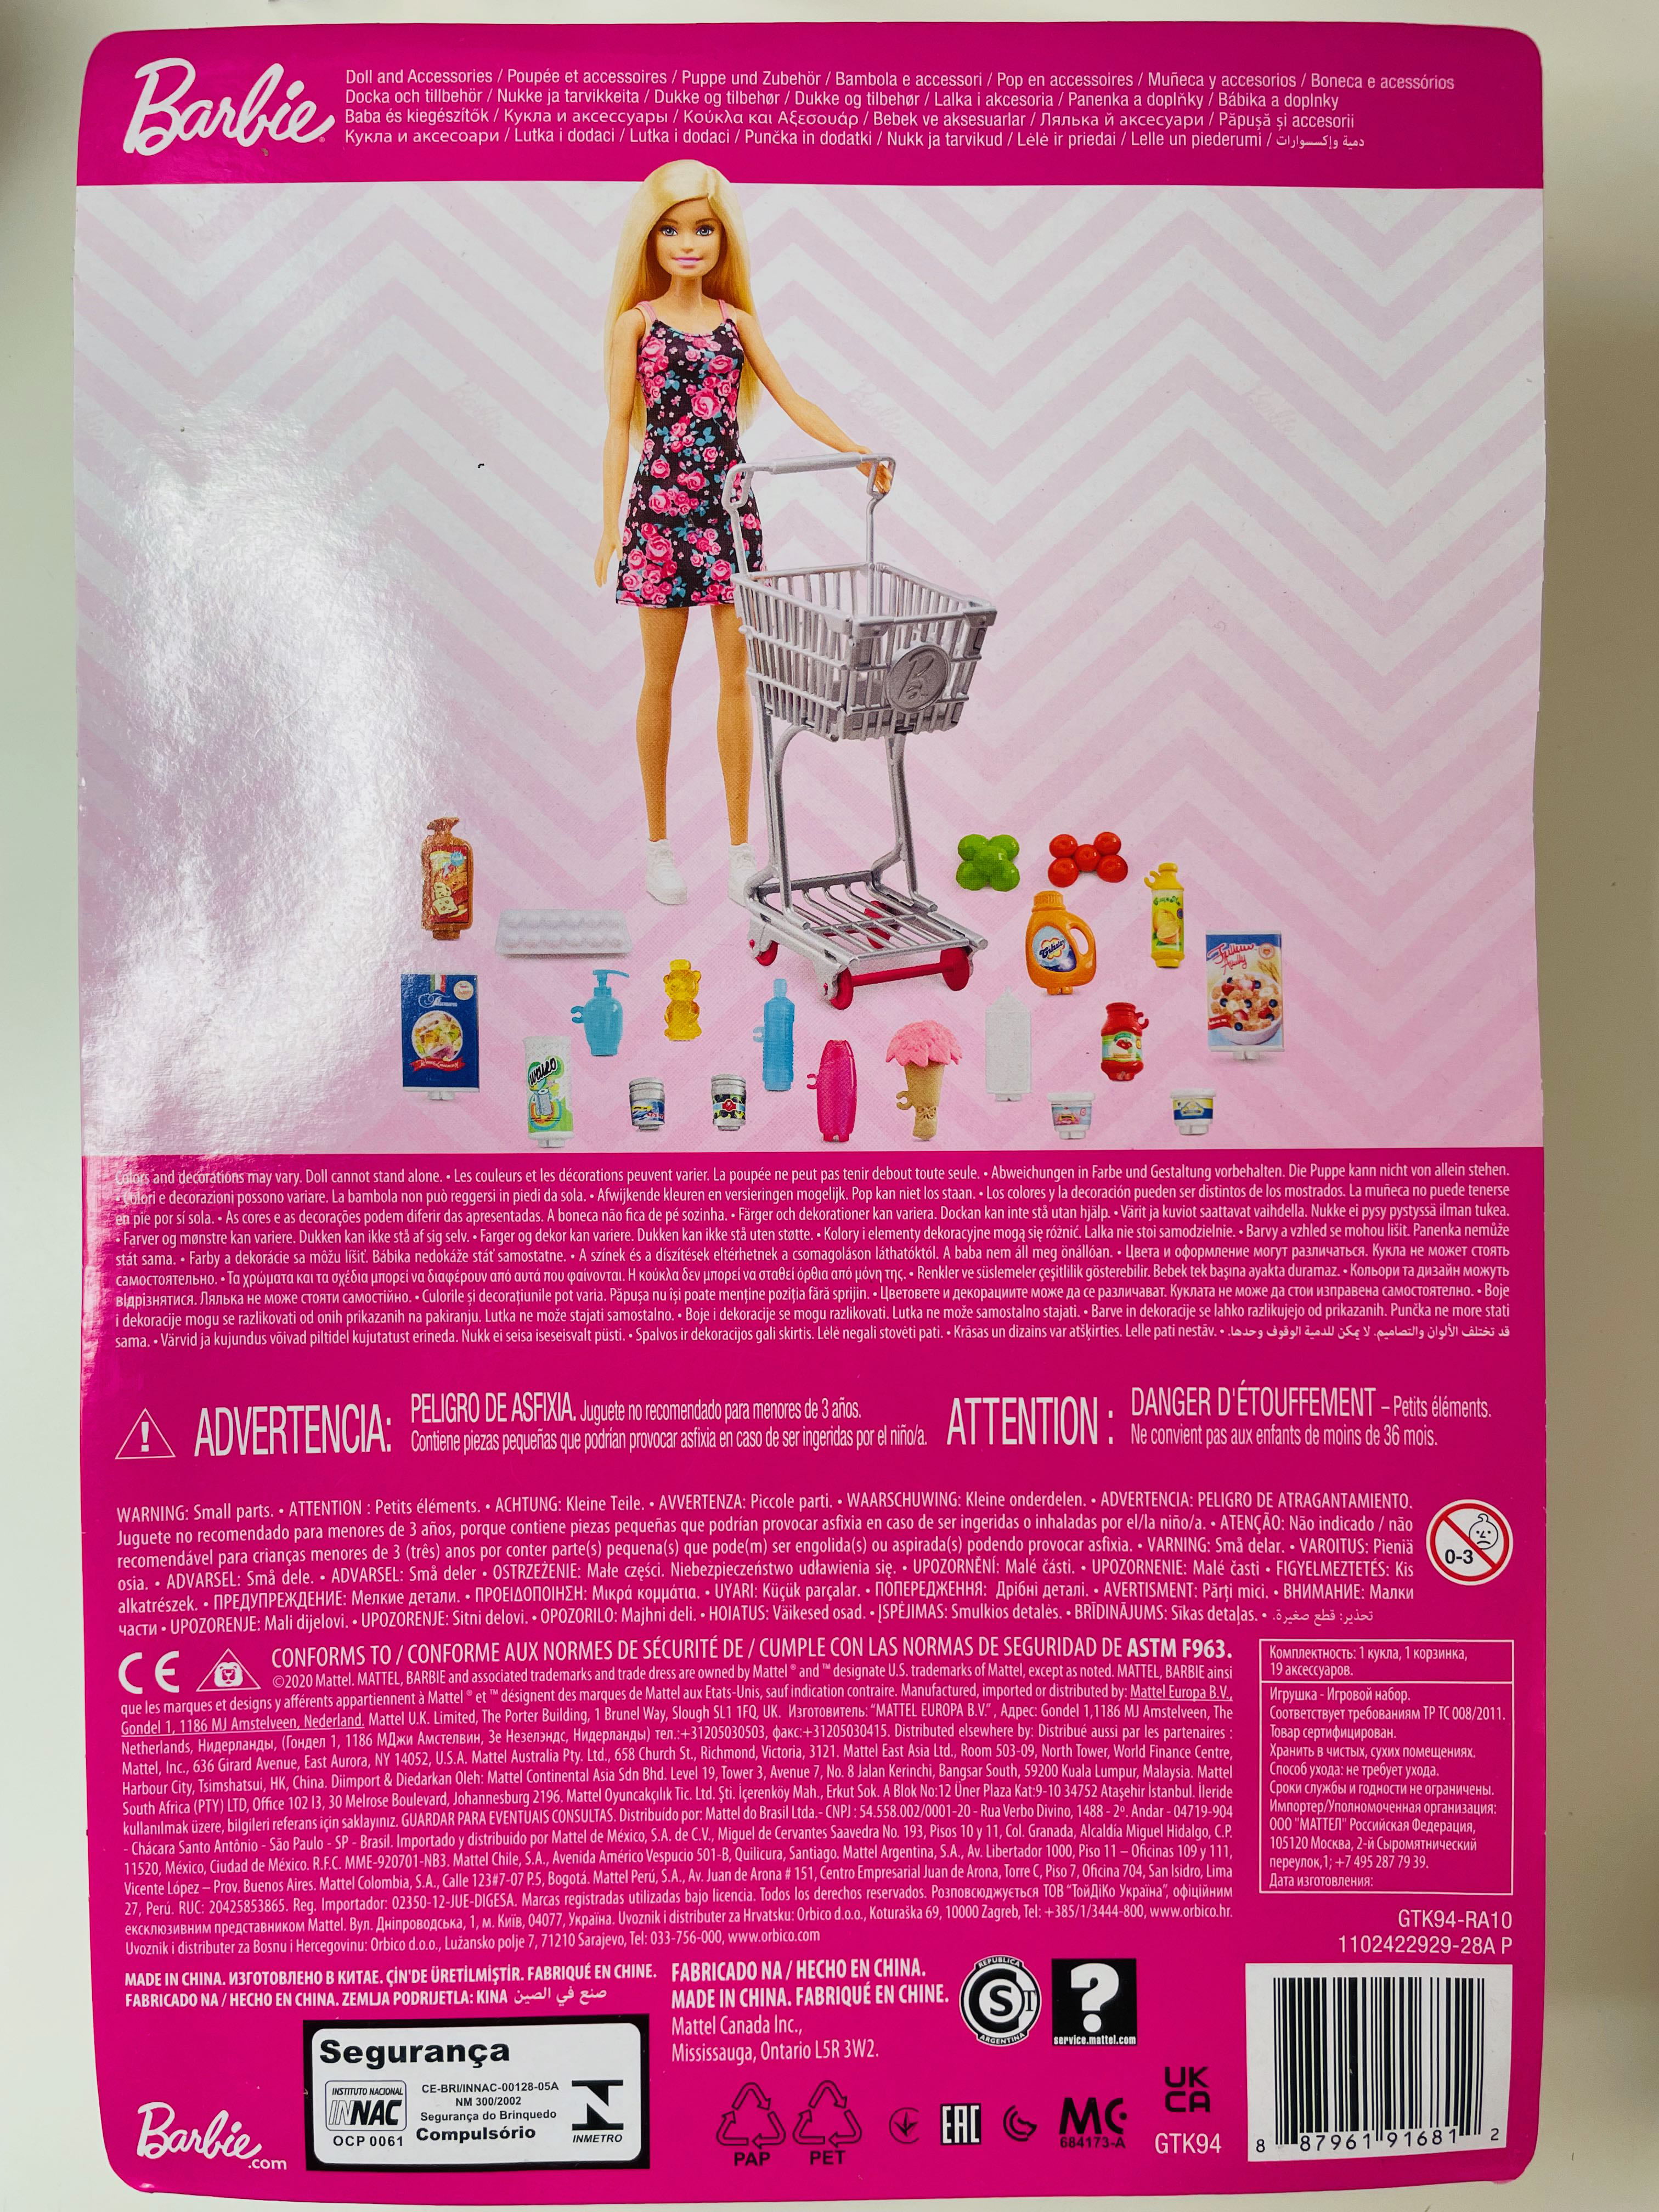 Mattel GTK94 Barbie Shopping Time con Carrello Spesa e Accessori